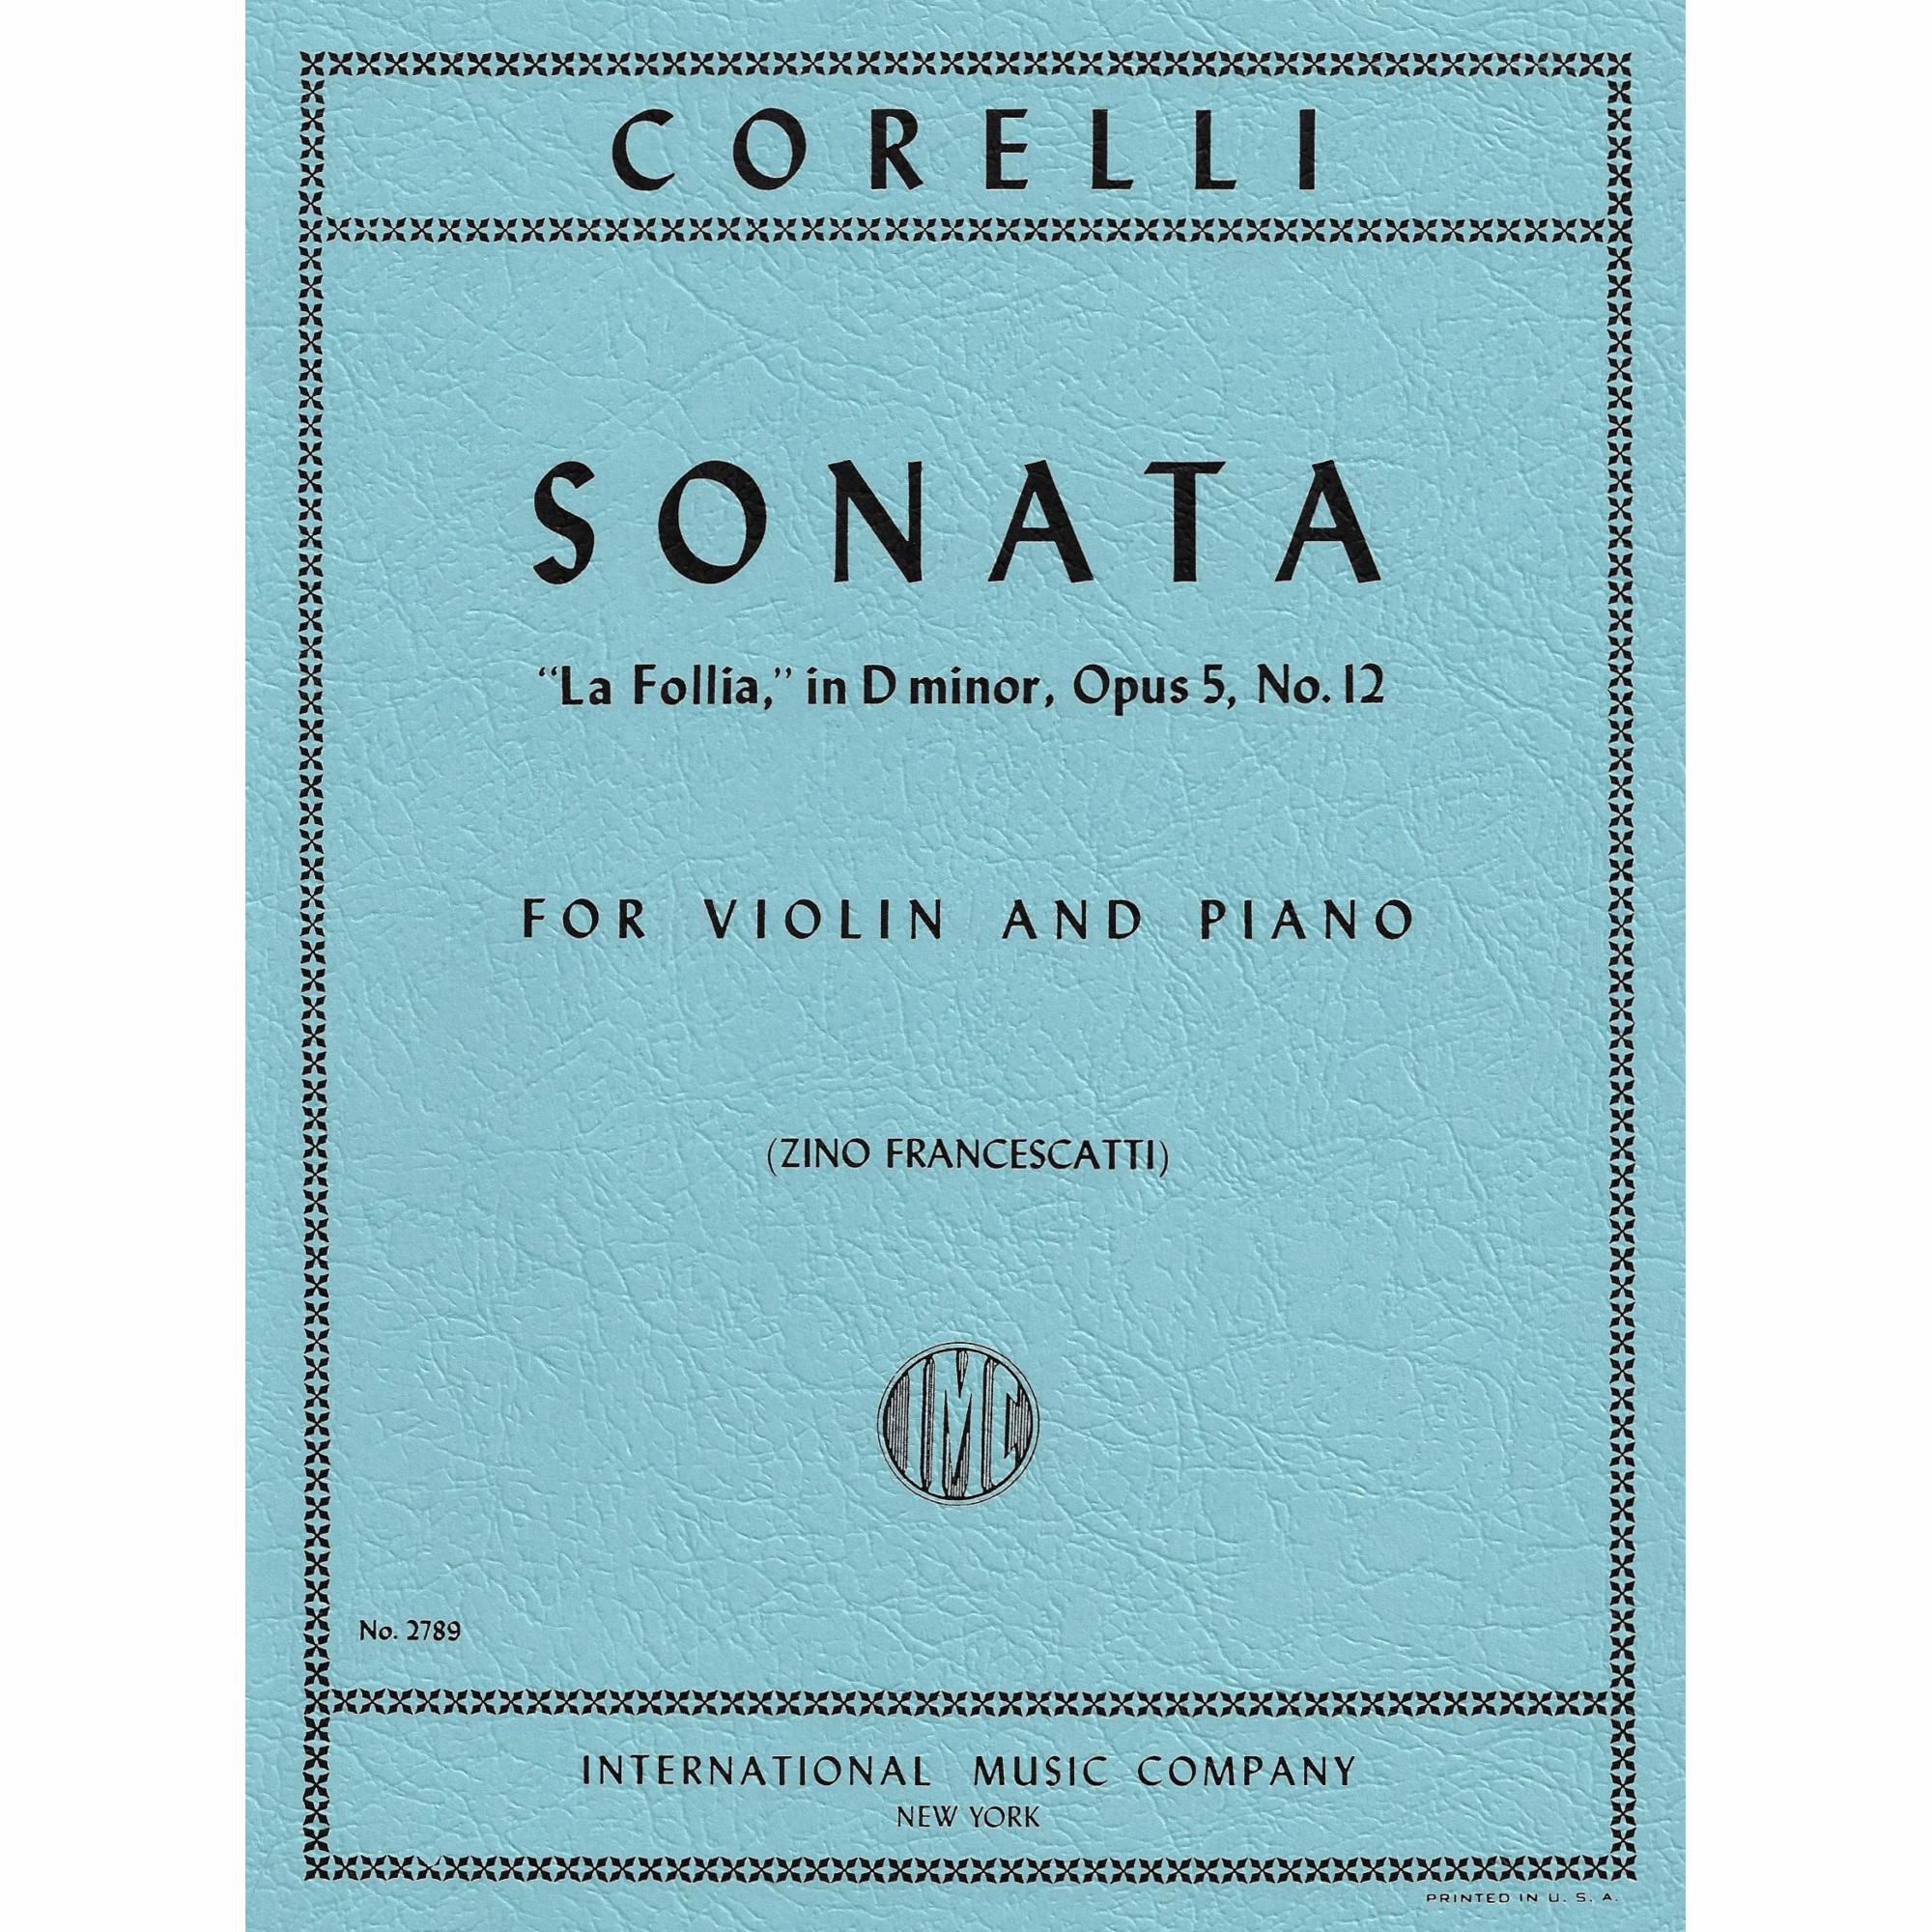 Corelli -- Sonata in D Minor, Op. 5, No. 12 (La Follia) for Violin and Piano